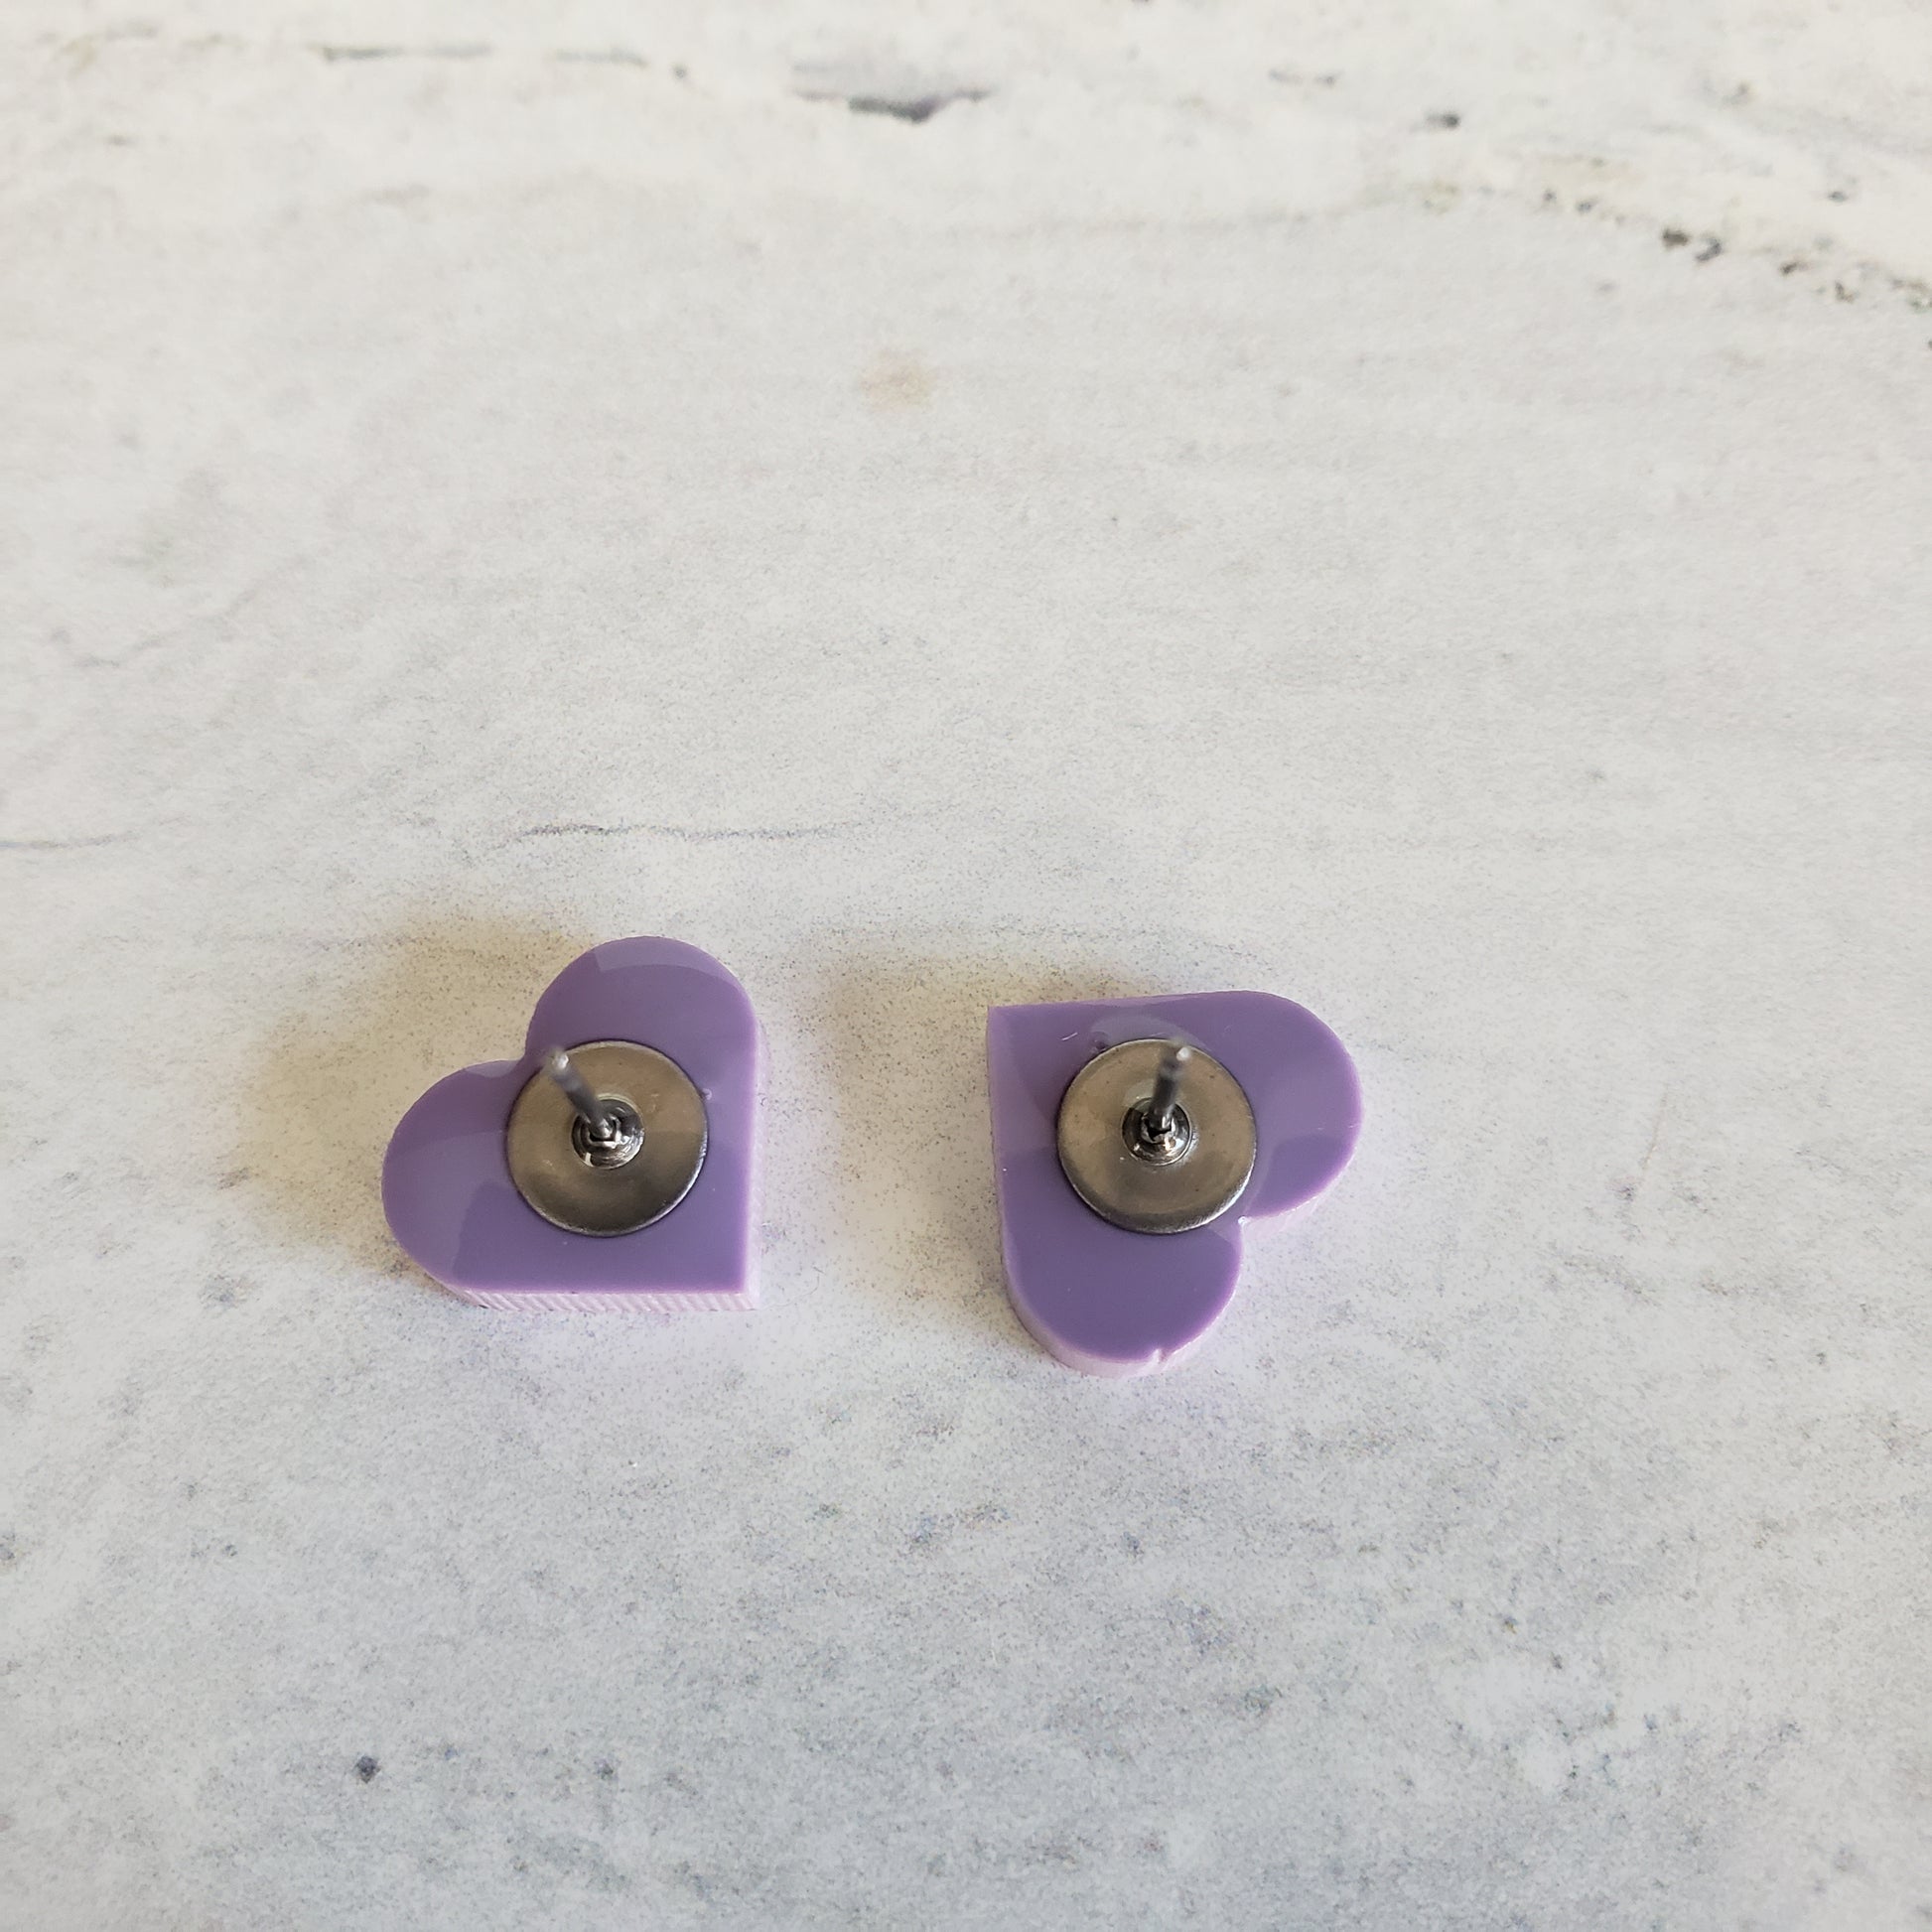 backside of matte purple pastel heart shaped stud earrings